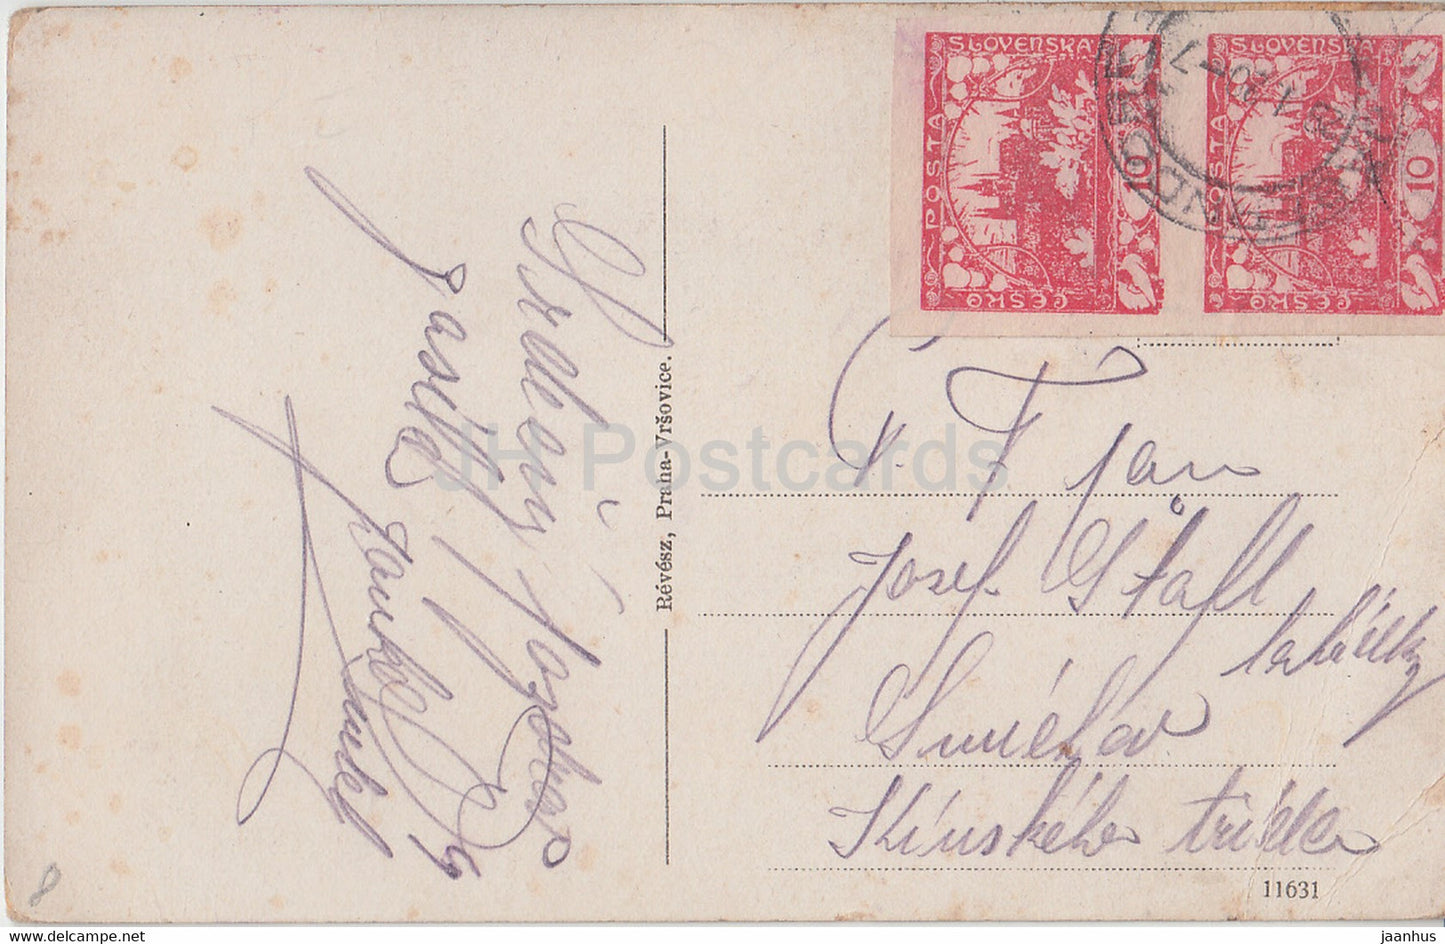 Cernosice - old postcard - Czech Republic - Czechoslovakia - used